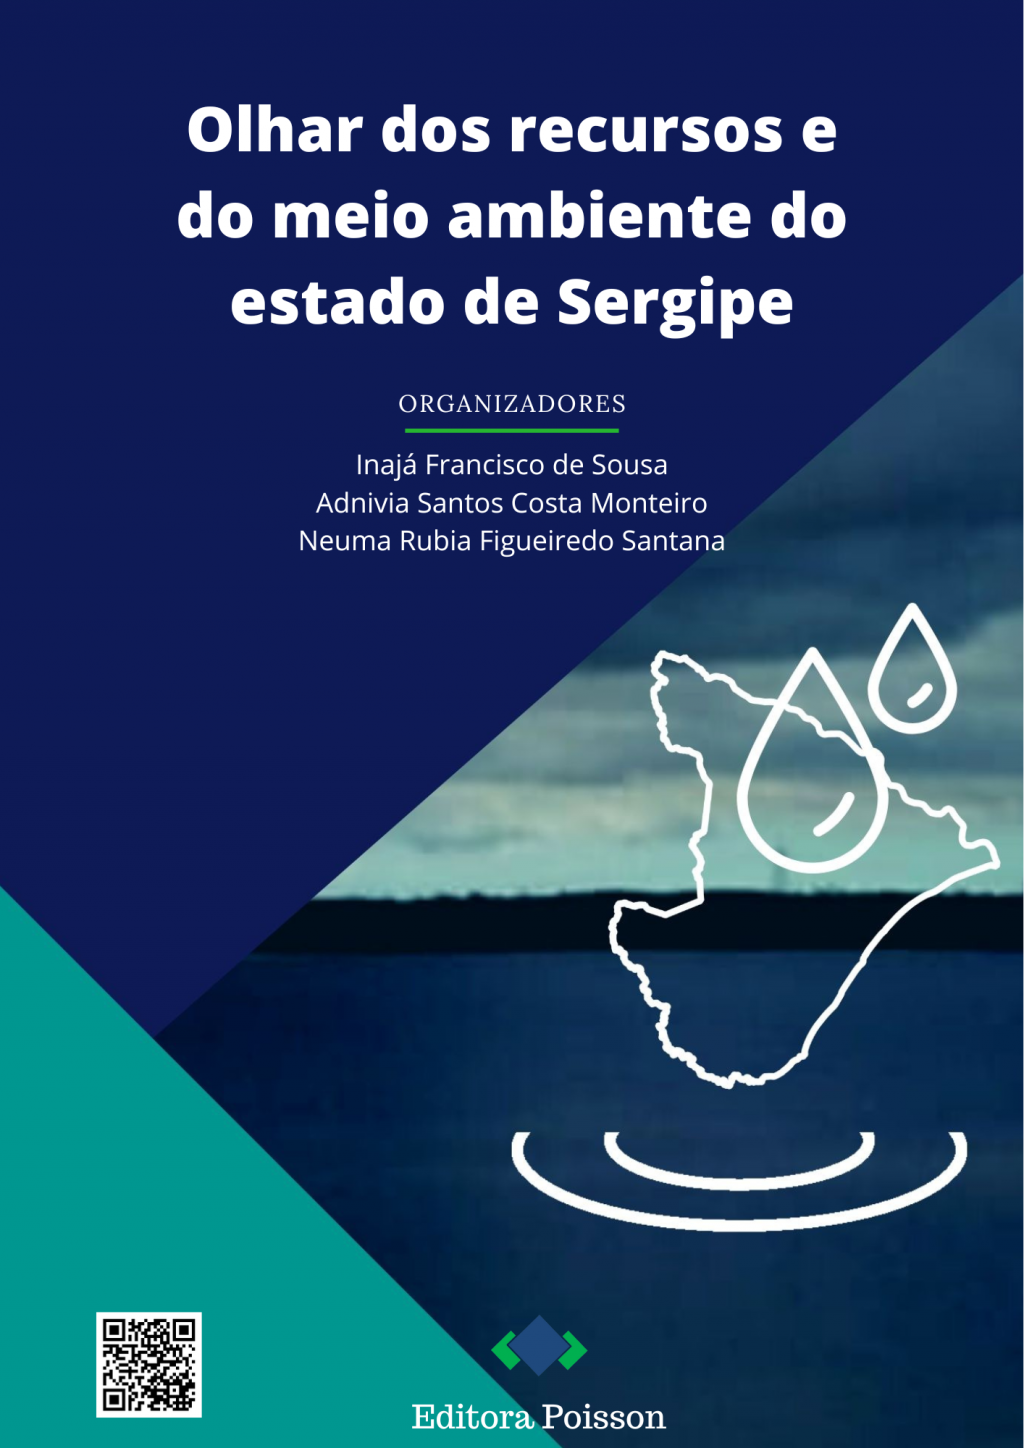 Olhar dos recursos e do meio ambiente do estado de Sergipe